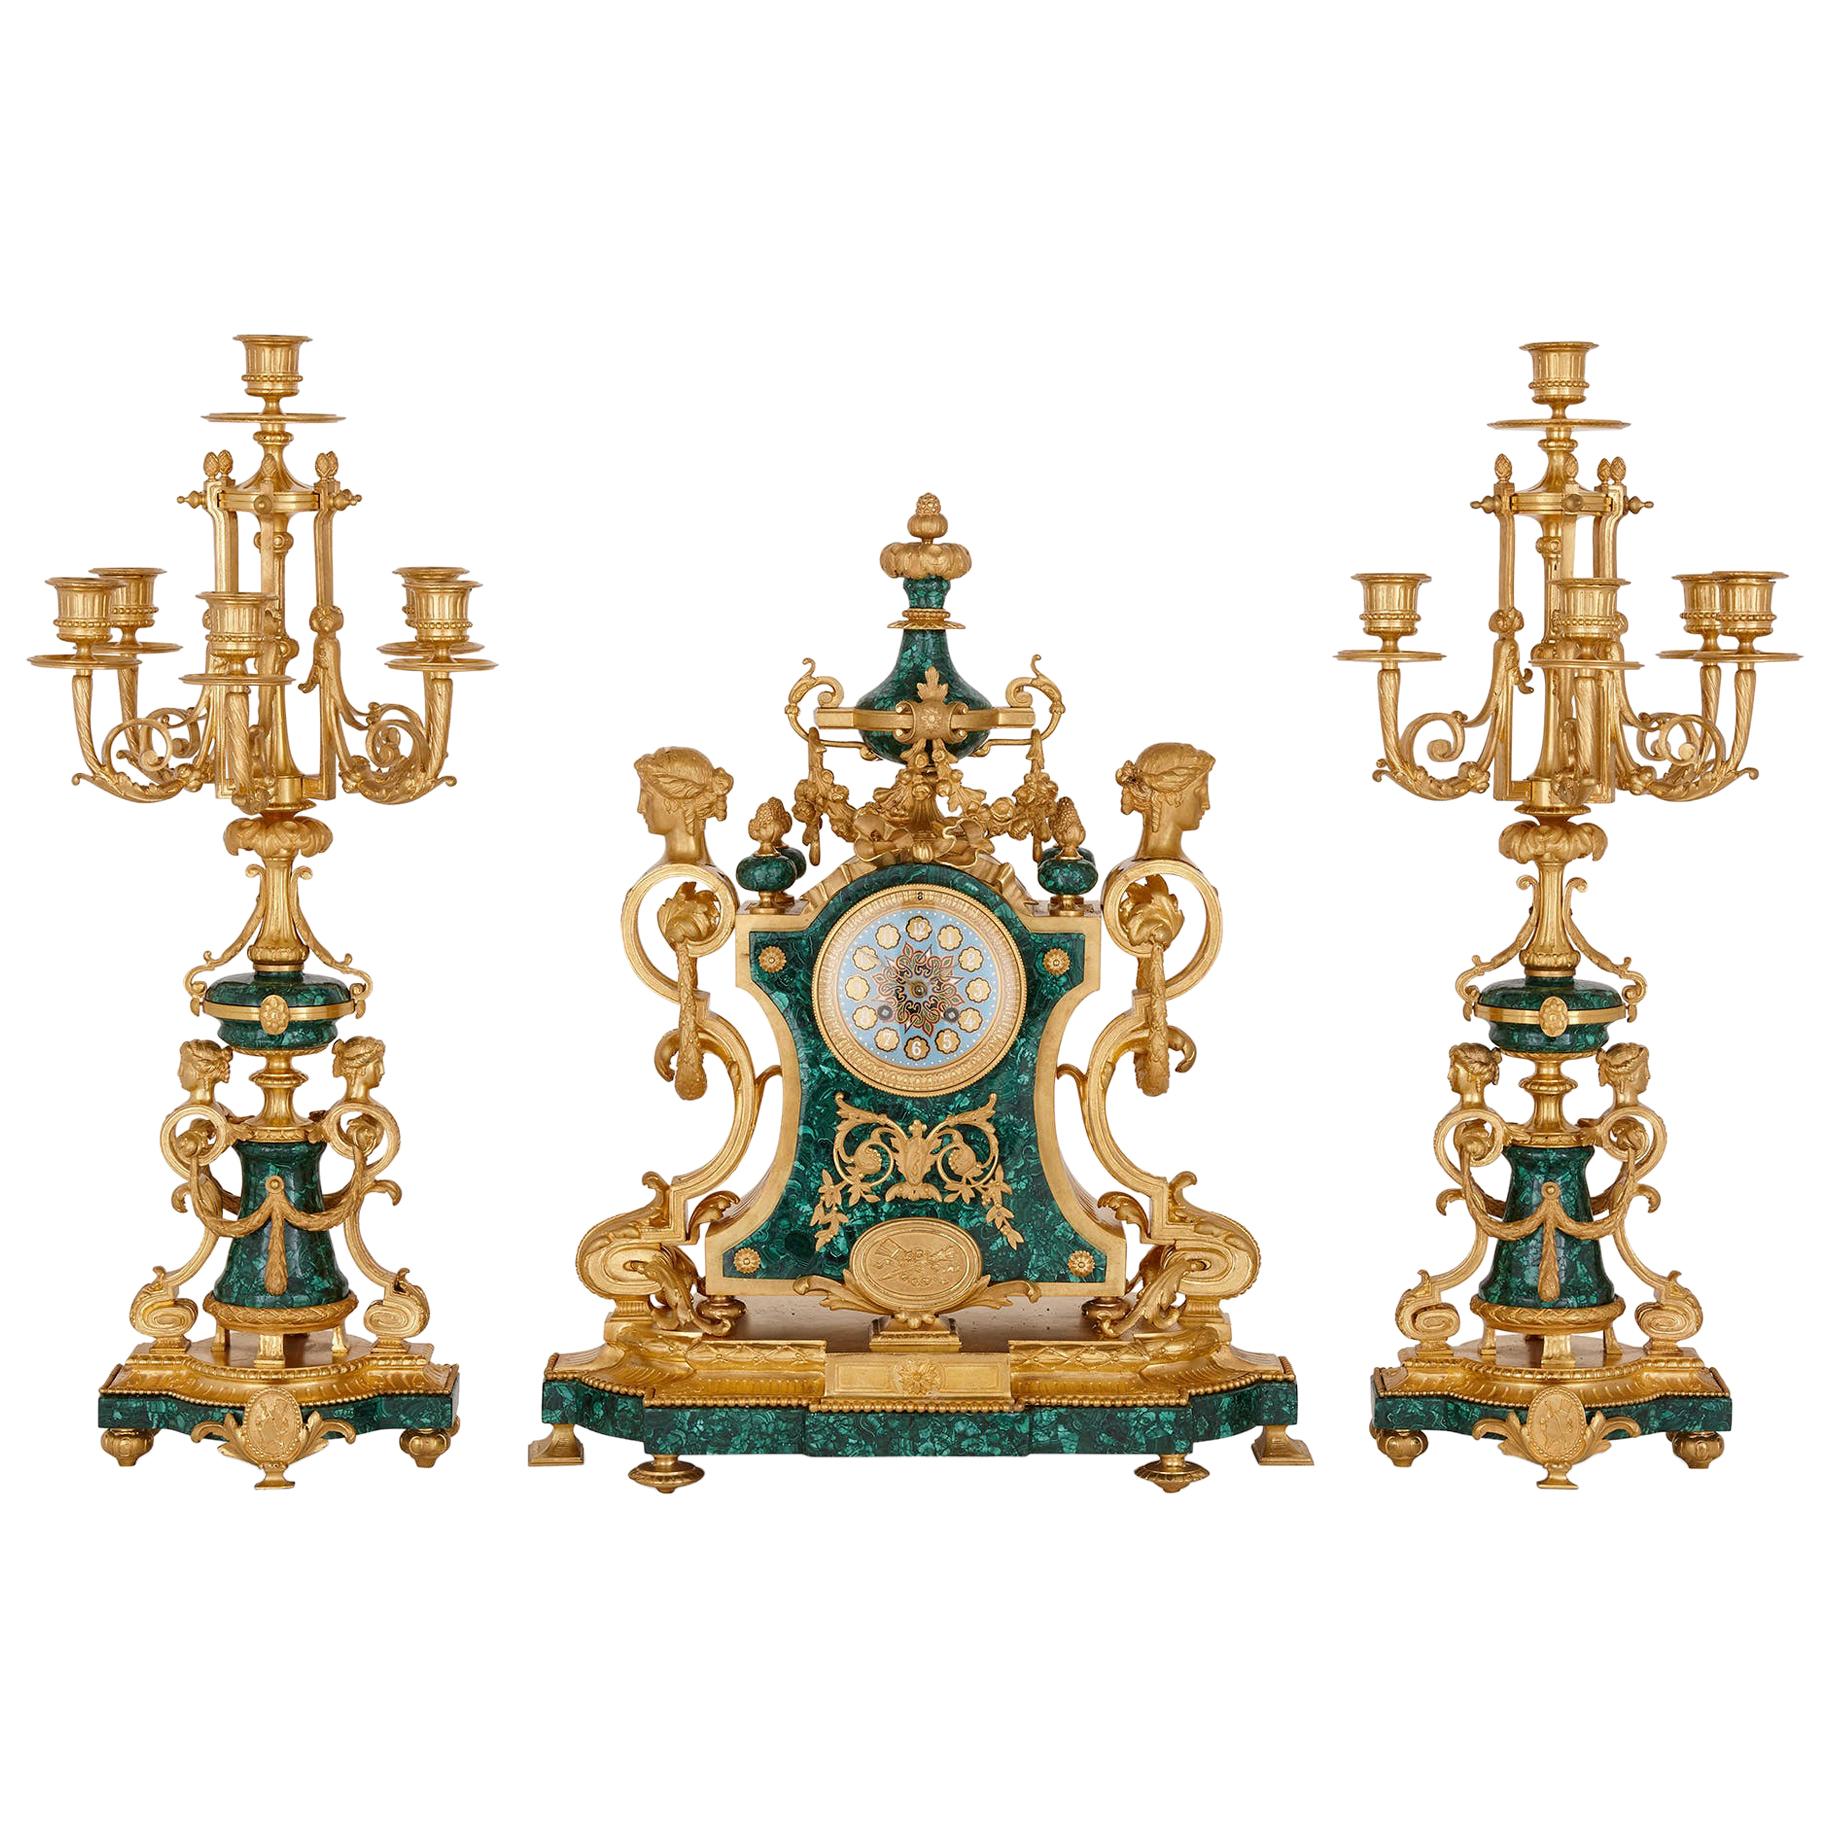 Dreiteiliges Uhrenset aus der Zeit Napoleons III. im neoklassizistischen Stil